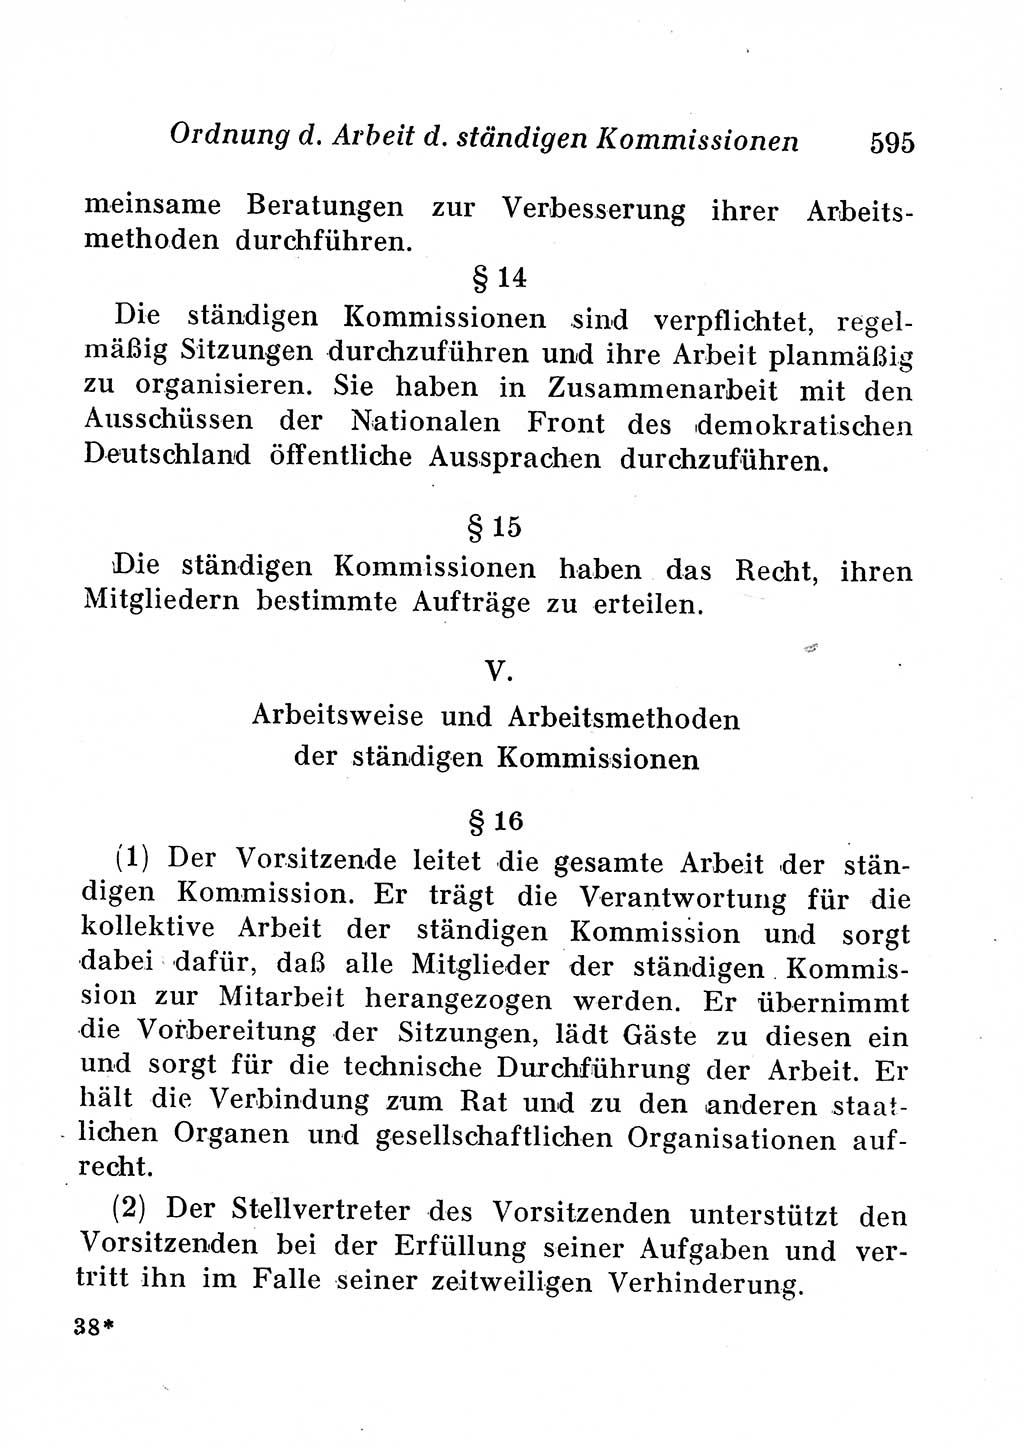 Staats- und verwaltungsrechtliche Gesetze der Deutschen Demokratischen Republik (DDR) 1958, Seite 595 (StVerwR Ges. DDR 1958, S. 595)